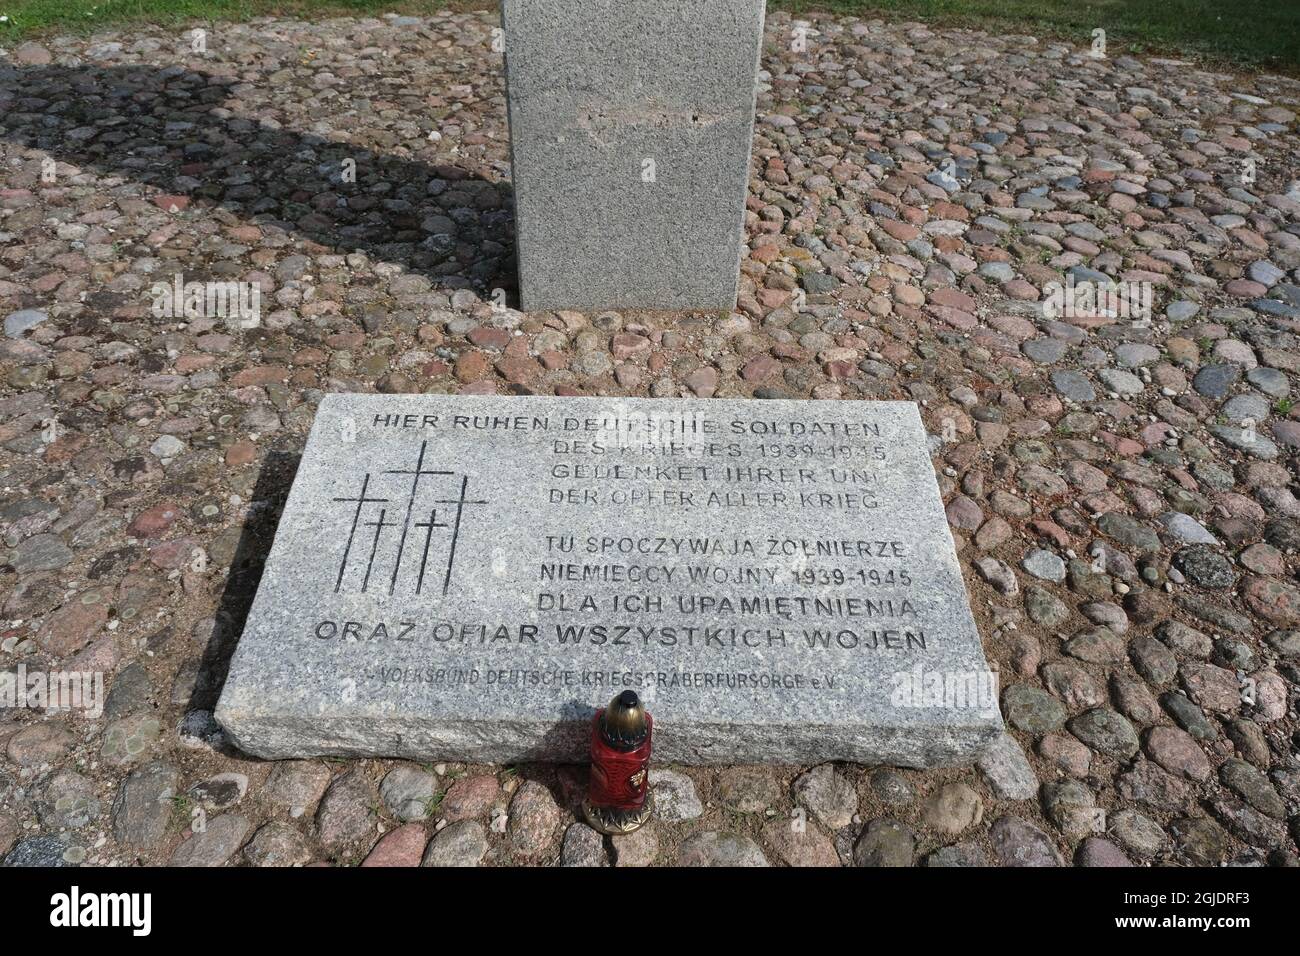 Elk, Bartosze, Polen - 16. Juli 2021: Deutscher Friedhof; Gedenkstätte für den Ersten und Zweiten Weltkrieg. Sommersonntag Stockfoto